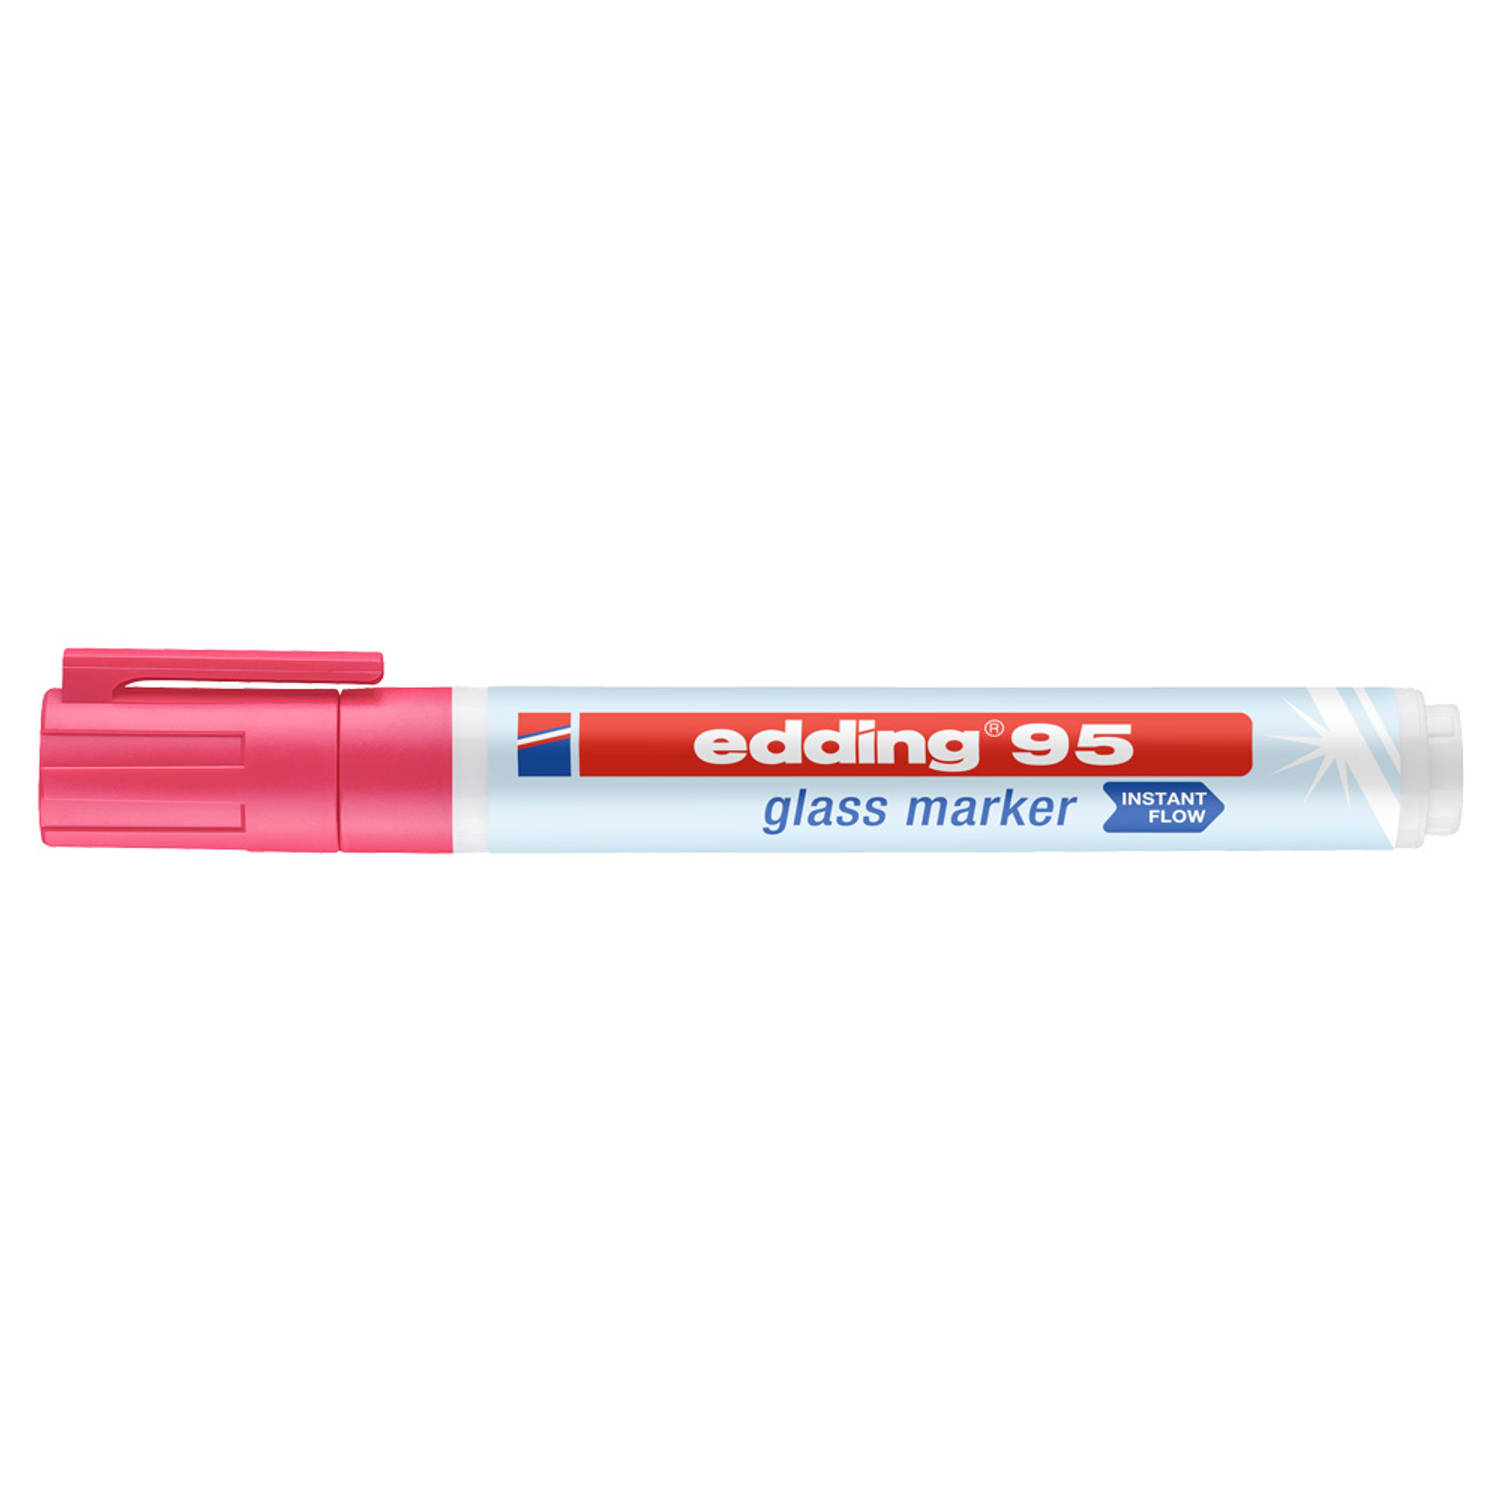 Edding e-95 4-95009 Glasmarker Pink 1.5 mm, 3 mm 1 stuks-pack